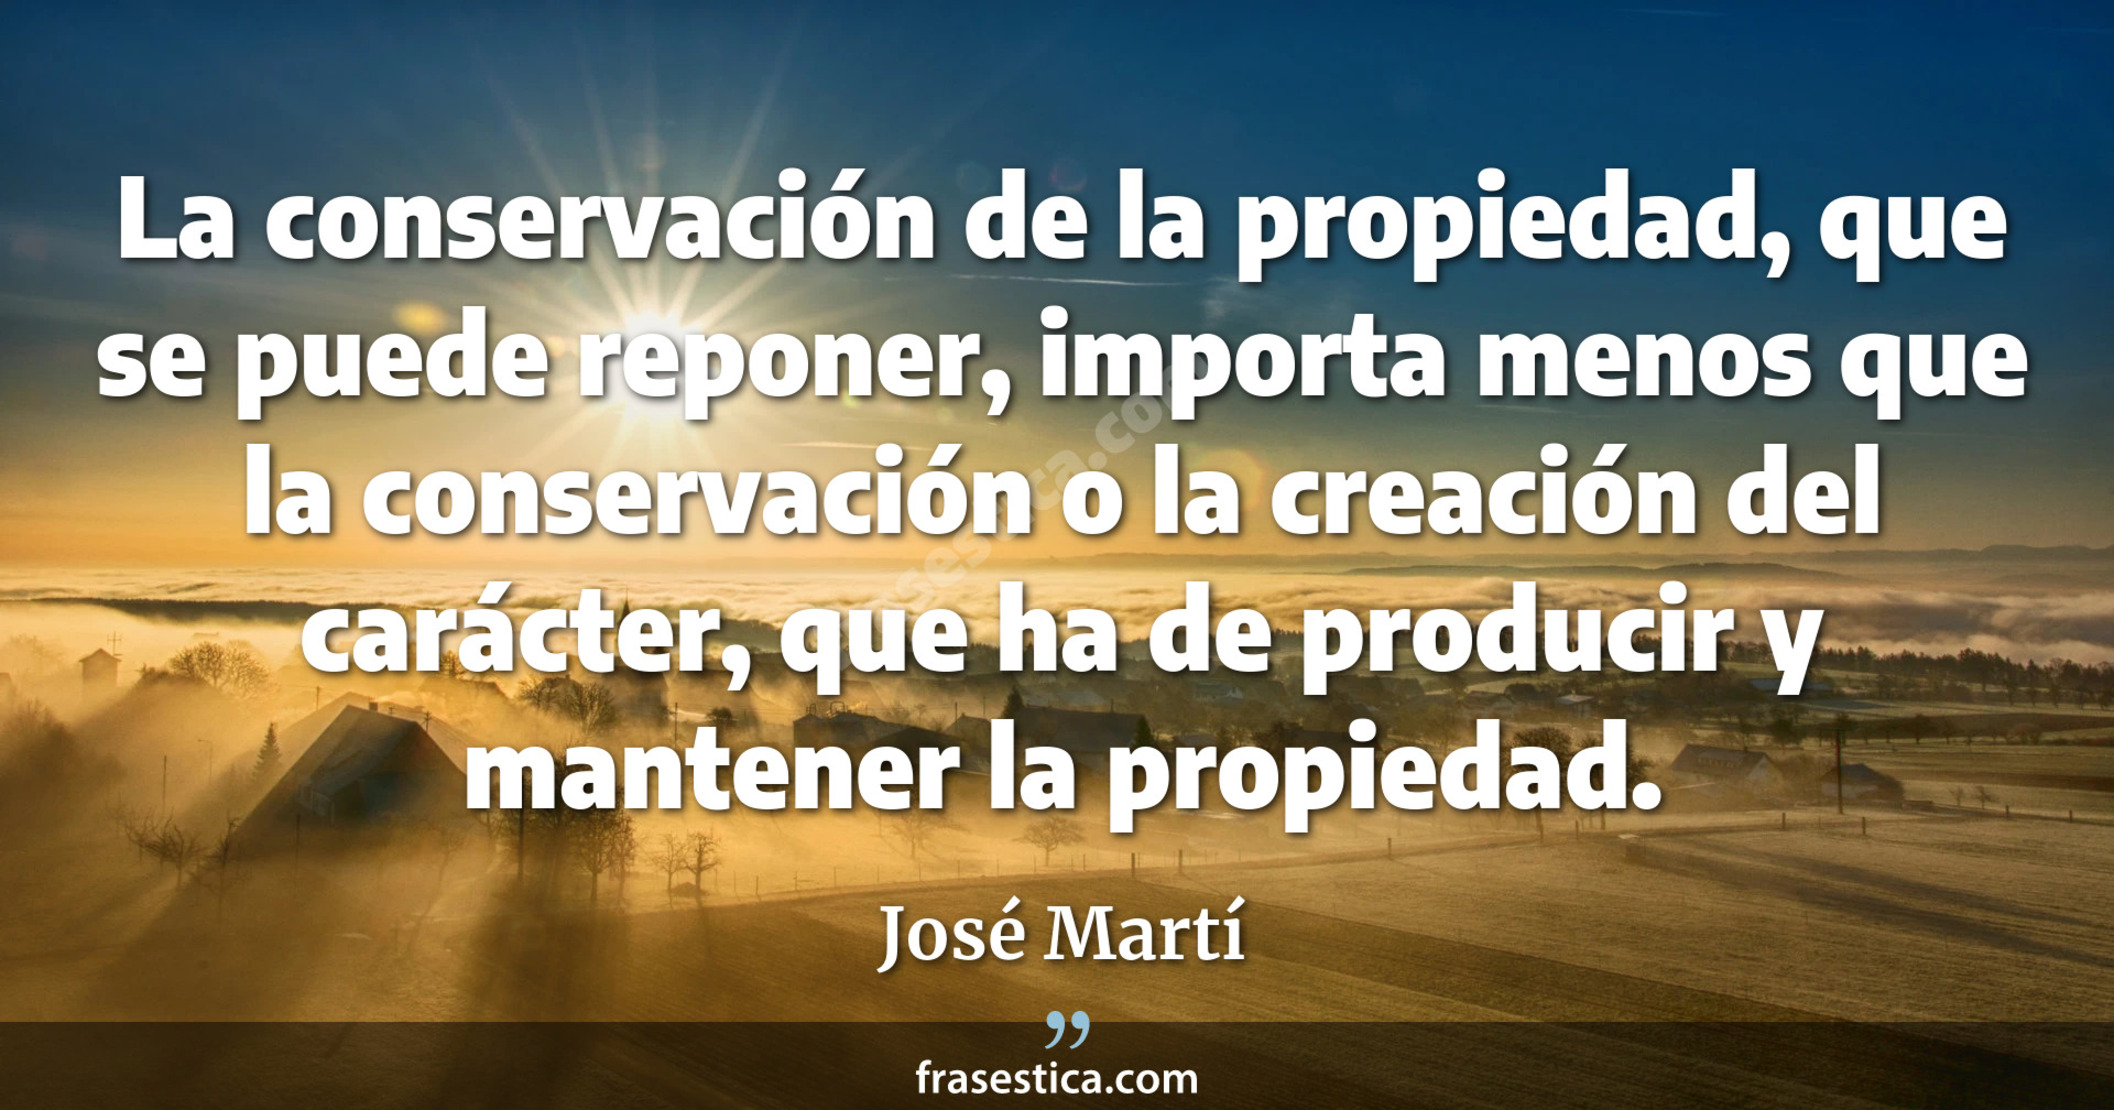 La conservación de la propiedad, que se puede reponer, importa menos que la conservación o la creación del carácter, que ha de producir y mantener la propiedad. - José Martí